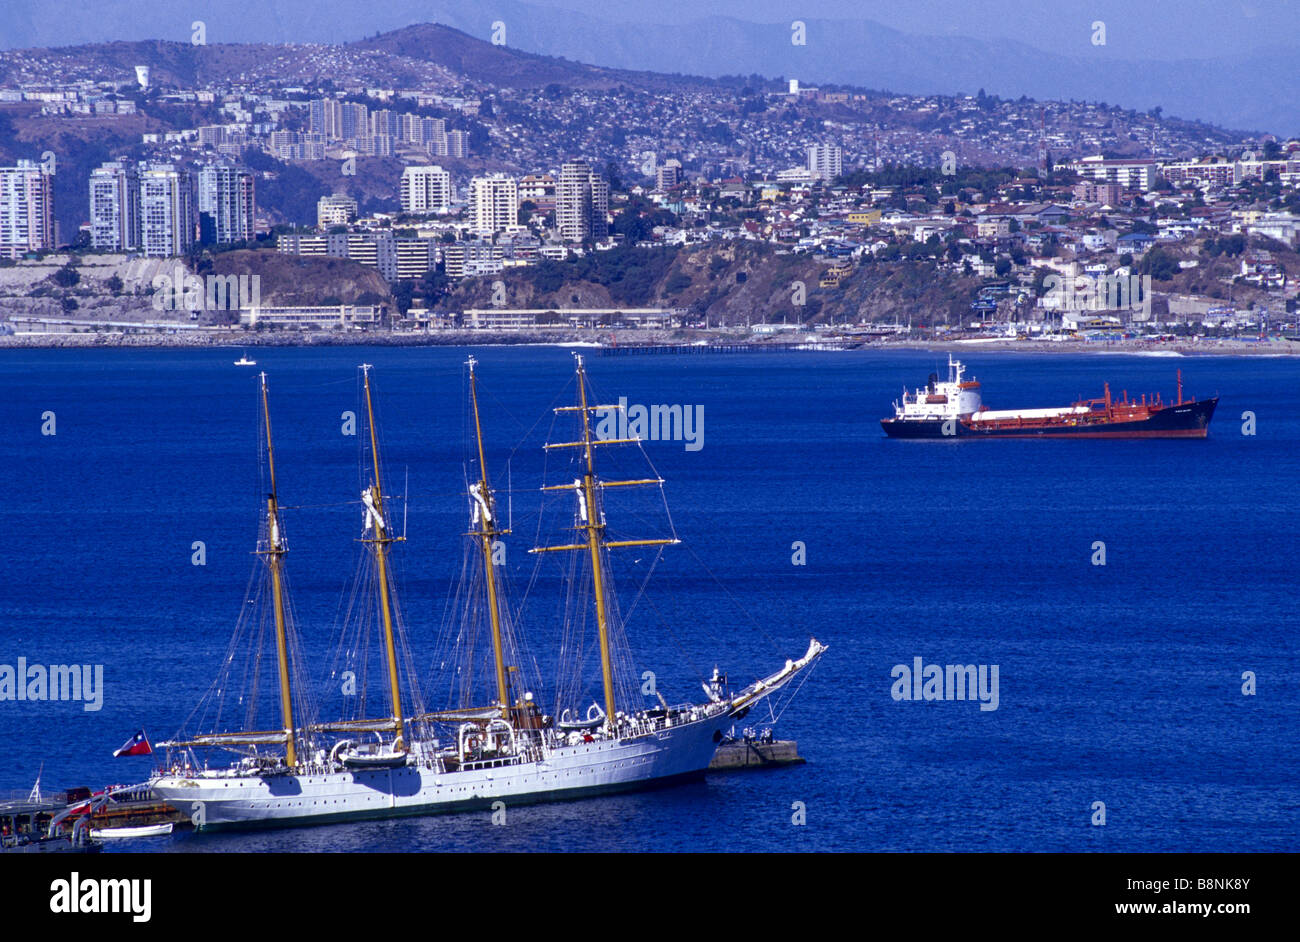 El Esmeralda school ship at port Valparaíso Chile Stock Photo